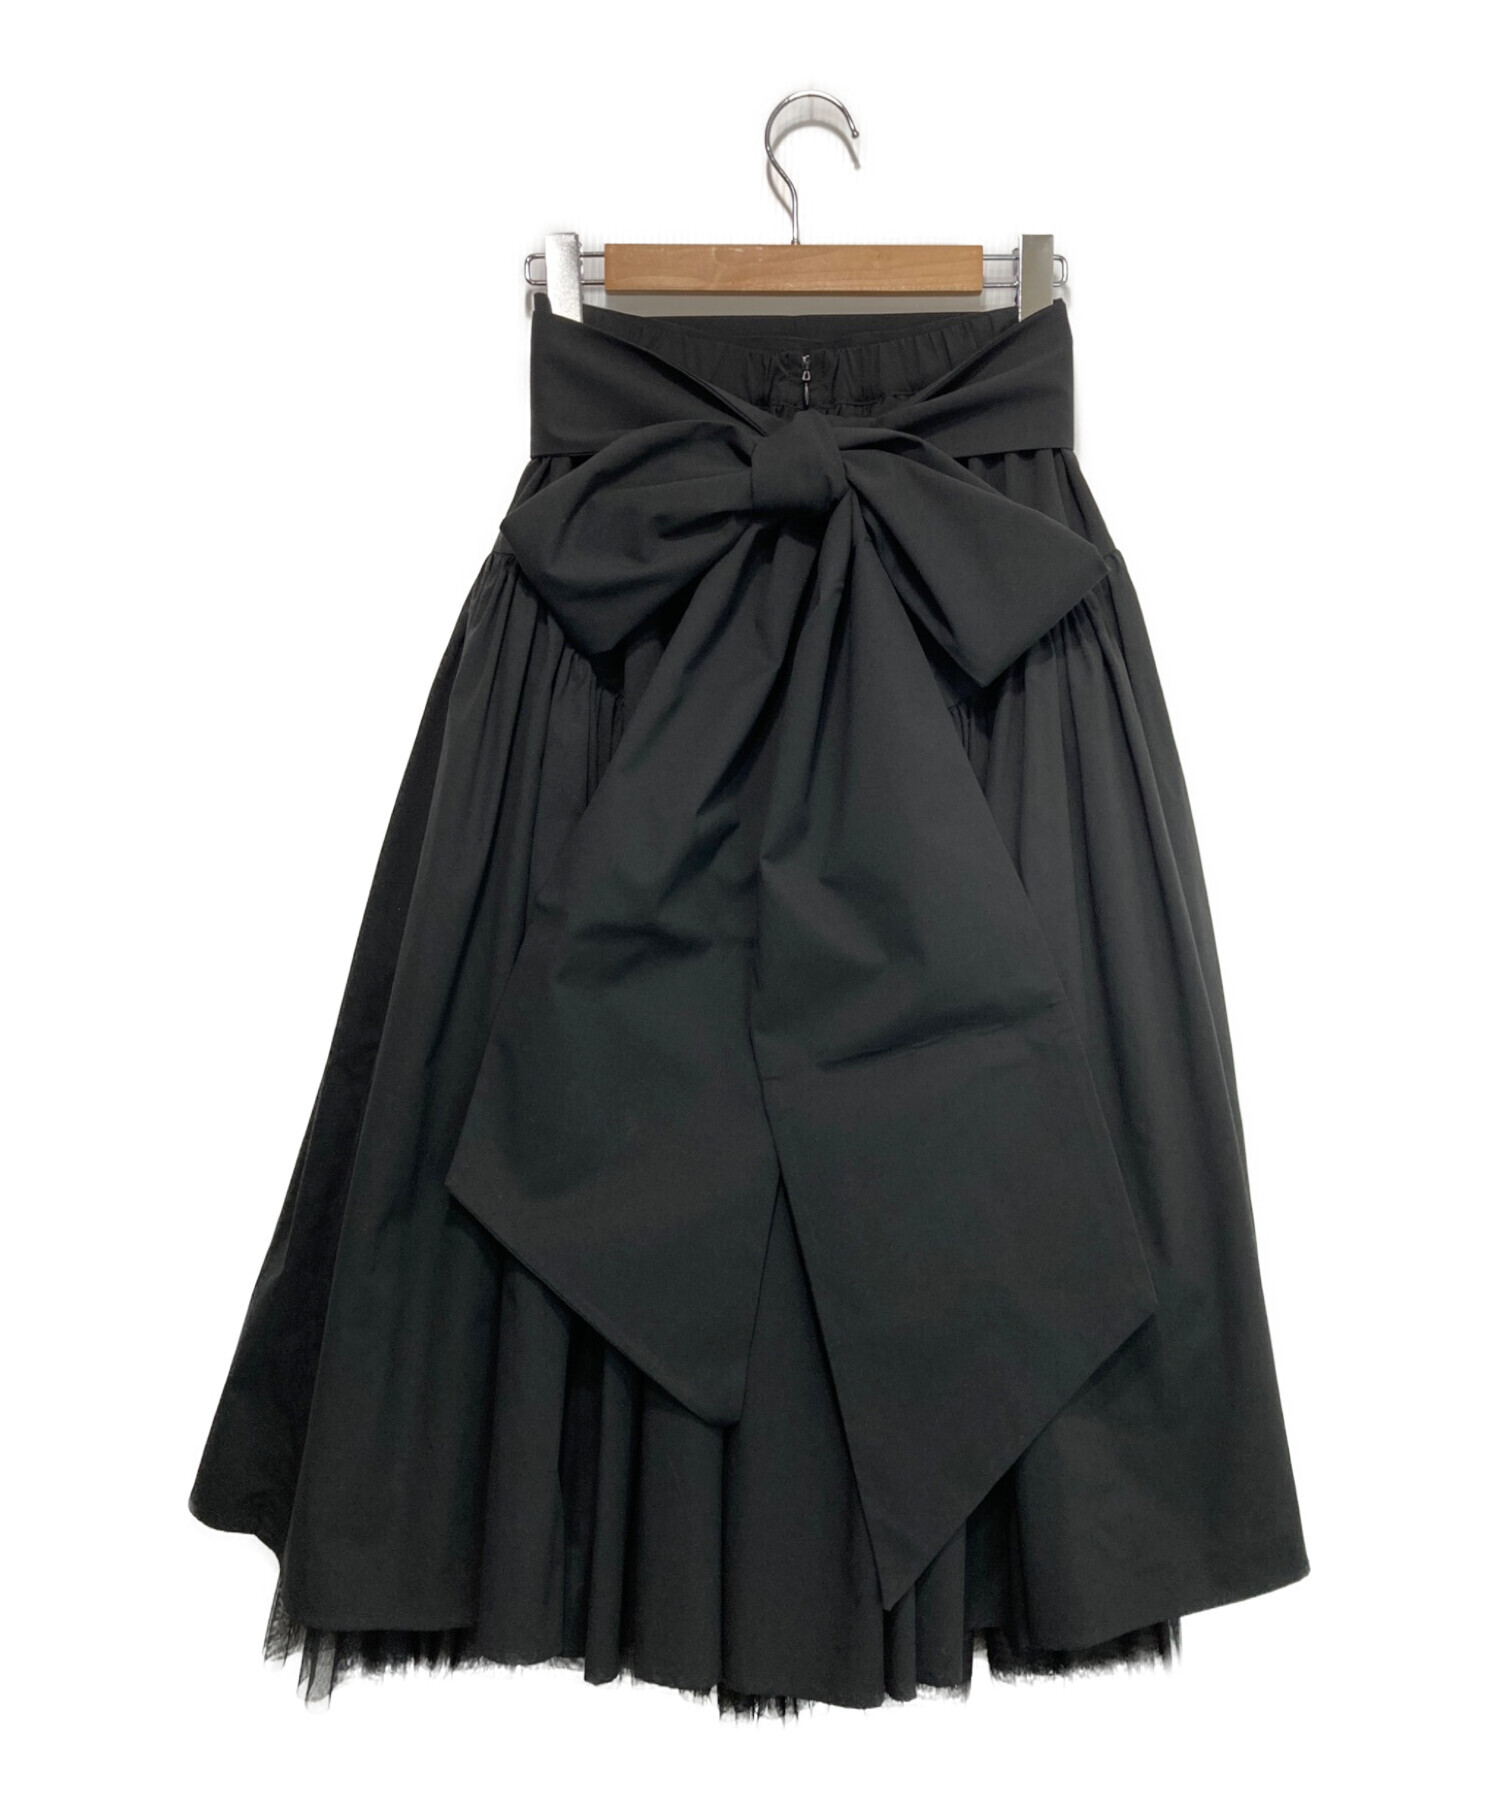 la belle Etude (ラベルエチュード) クラシカルボリュームスカート ブラック サイズ:FREE